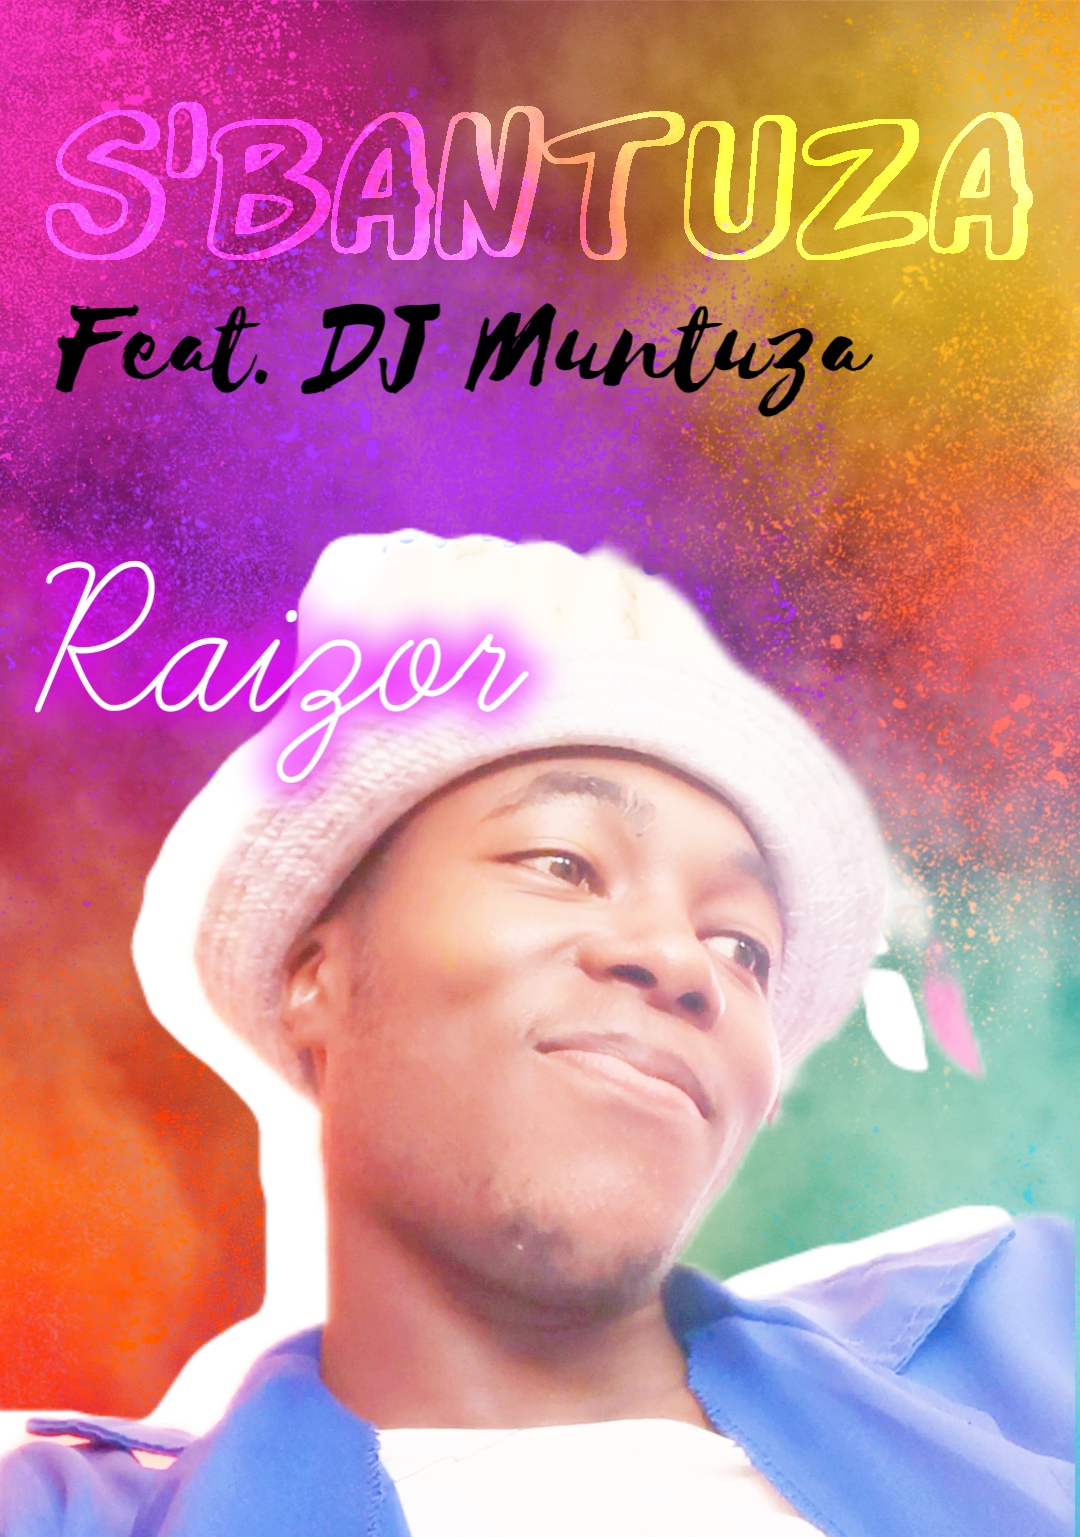 S'bantuza - Raizor Ft. DJ Muntuza